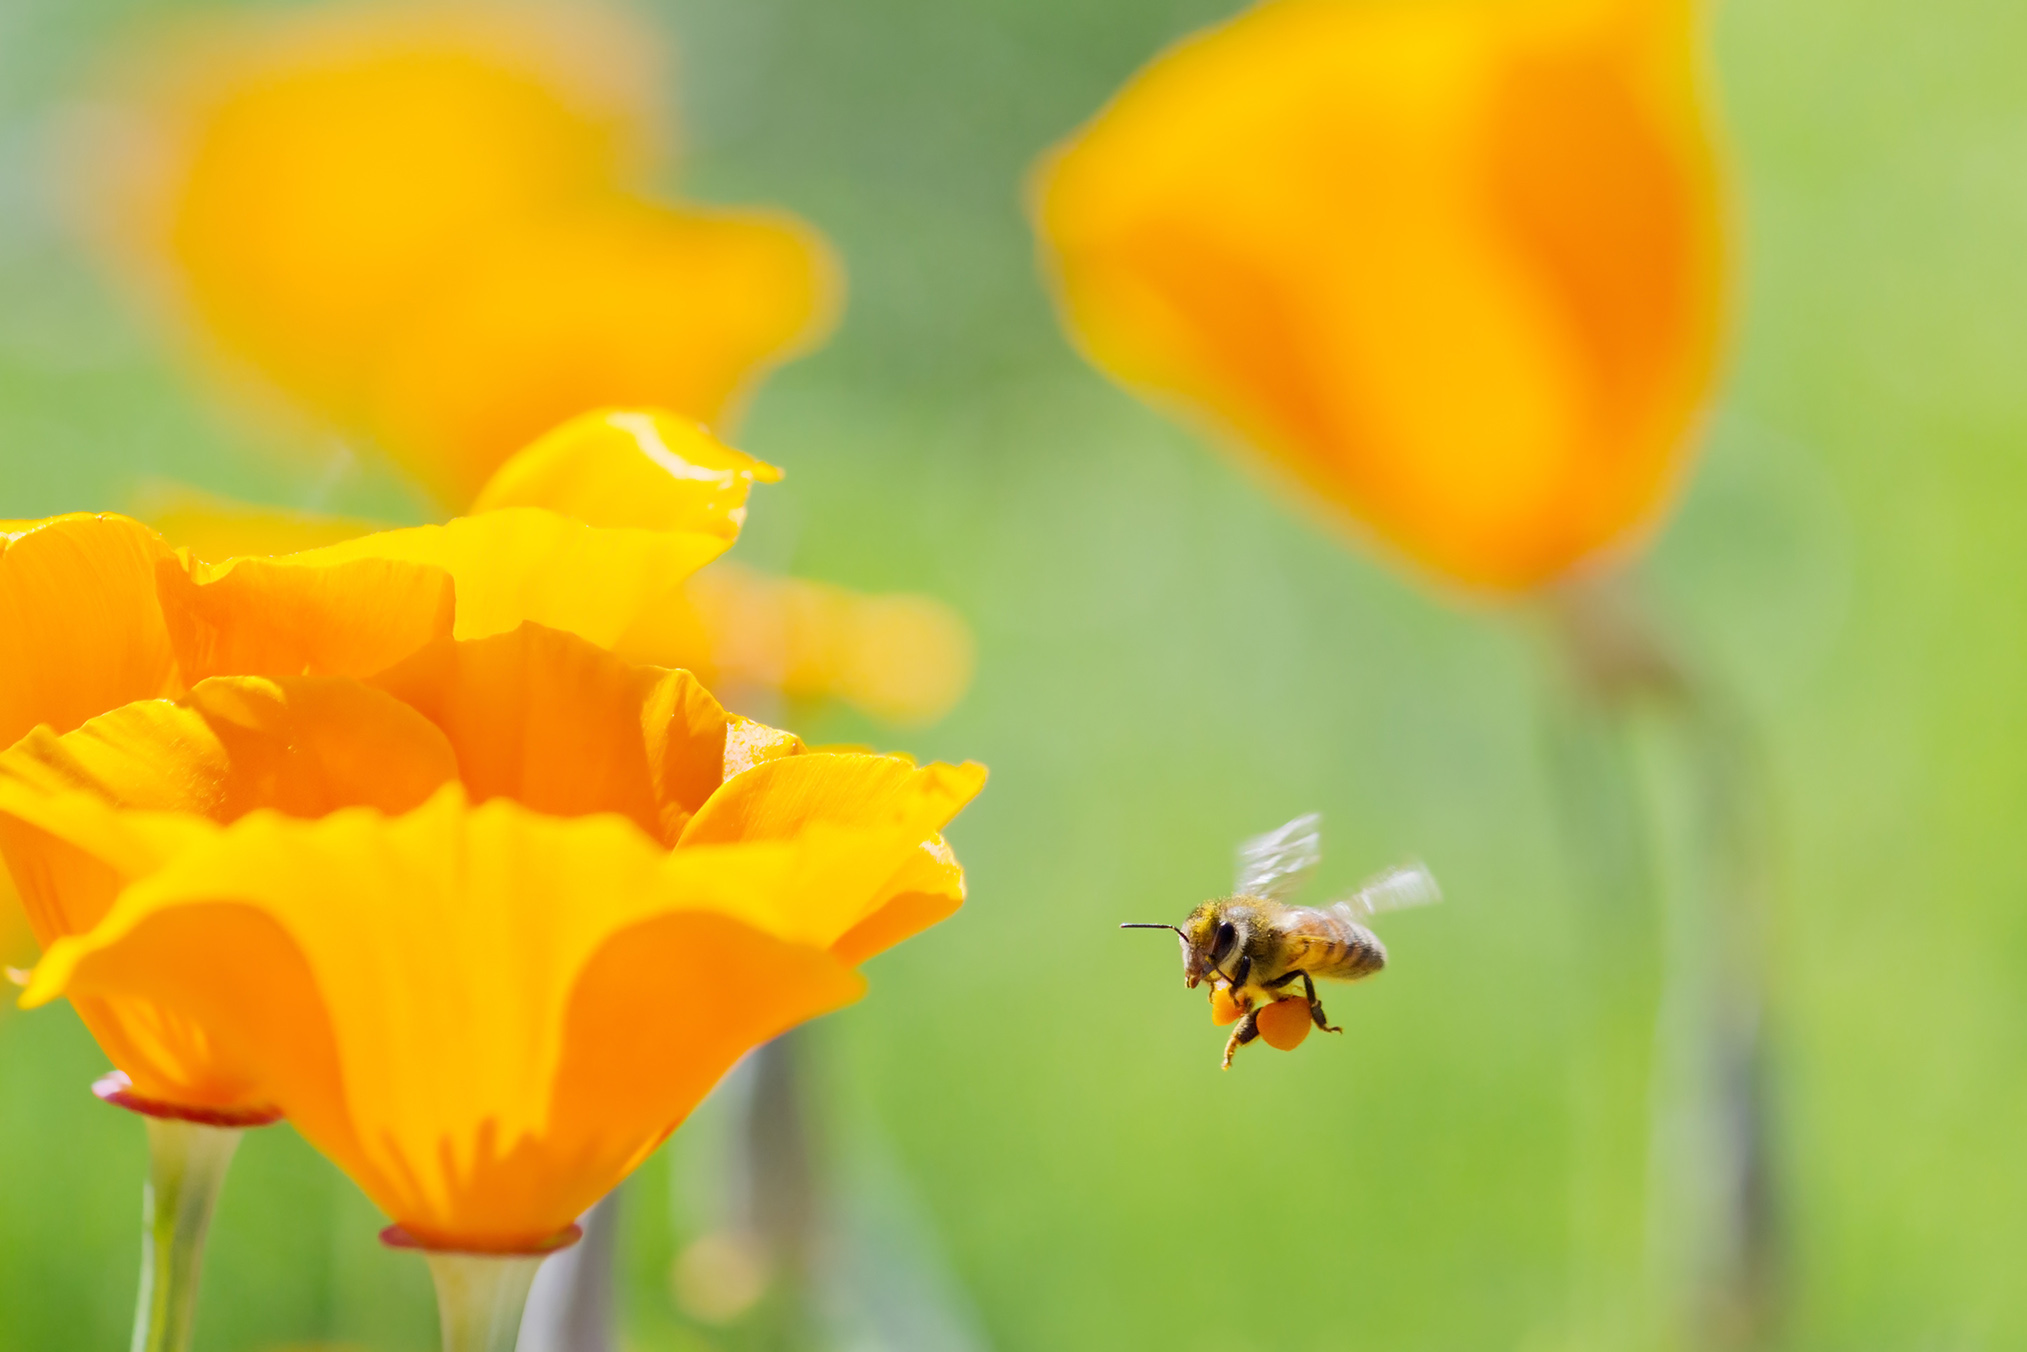 Honeybee collecting pollen from California Golden Poppy